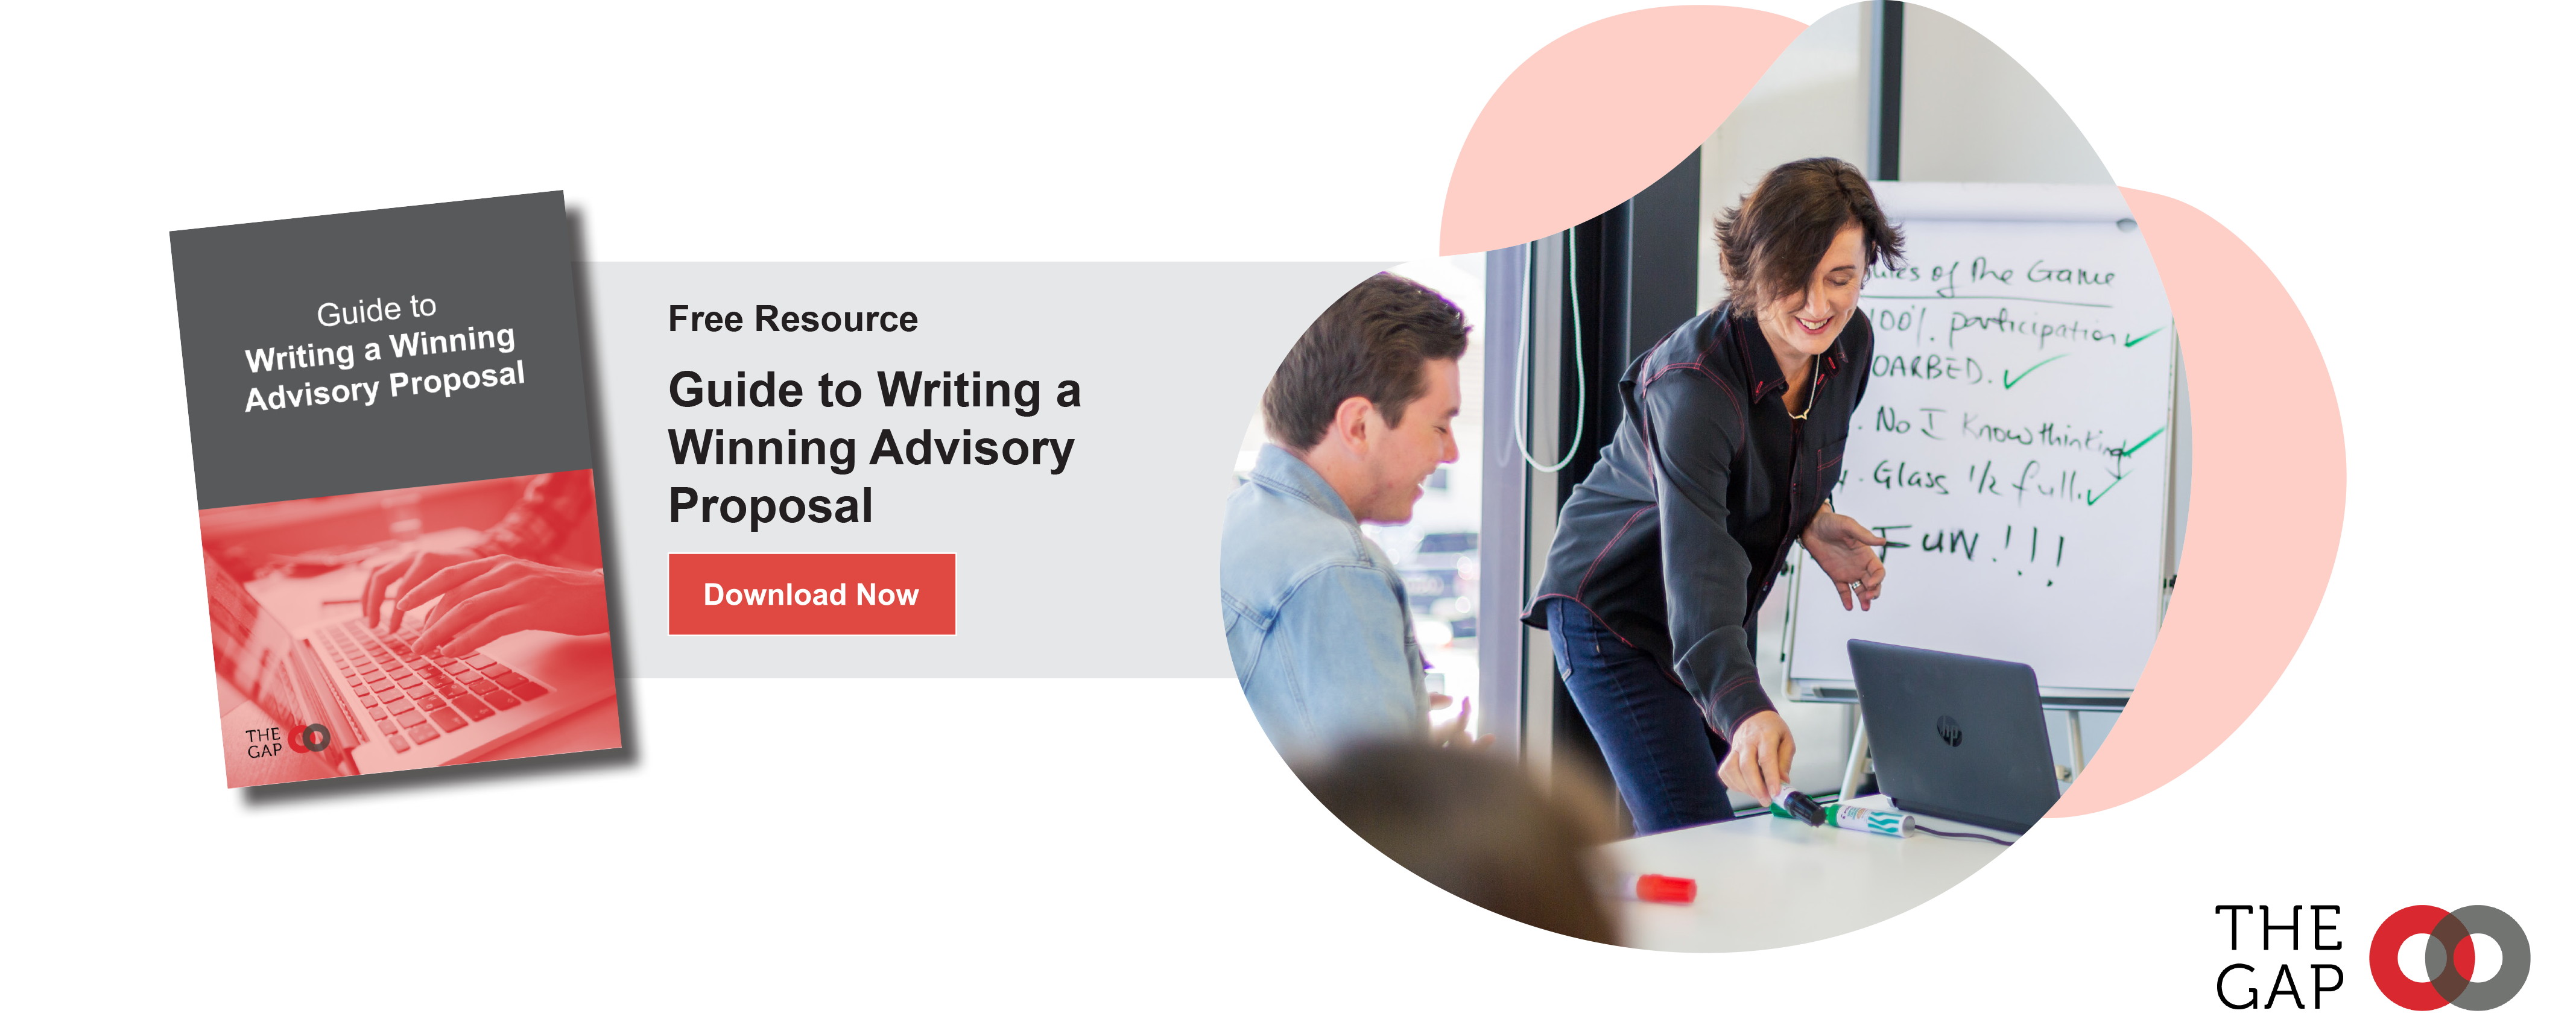 Guide to Writing a Winning Advisory Proposal